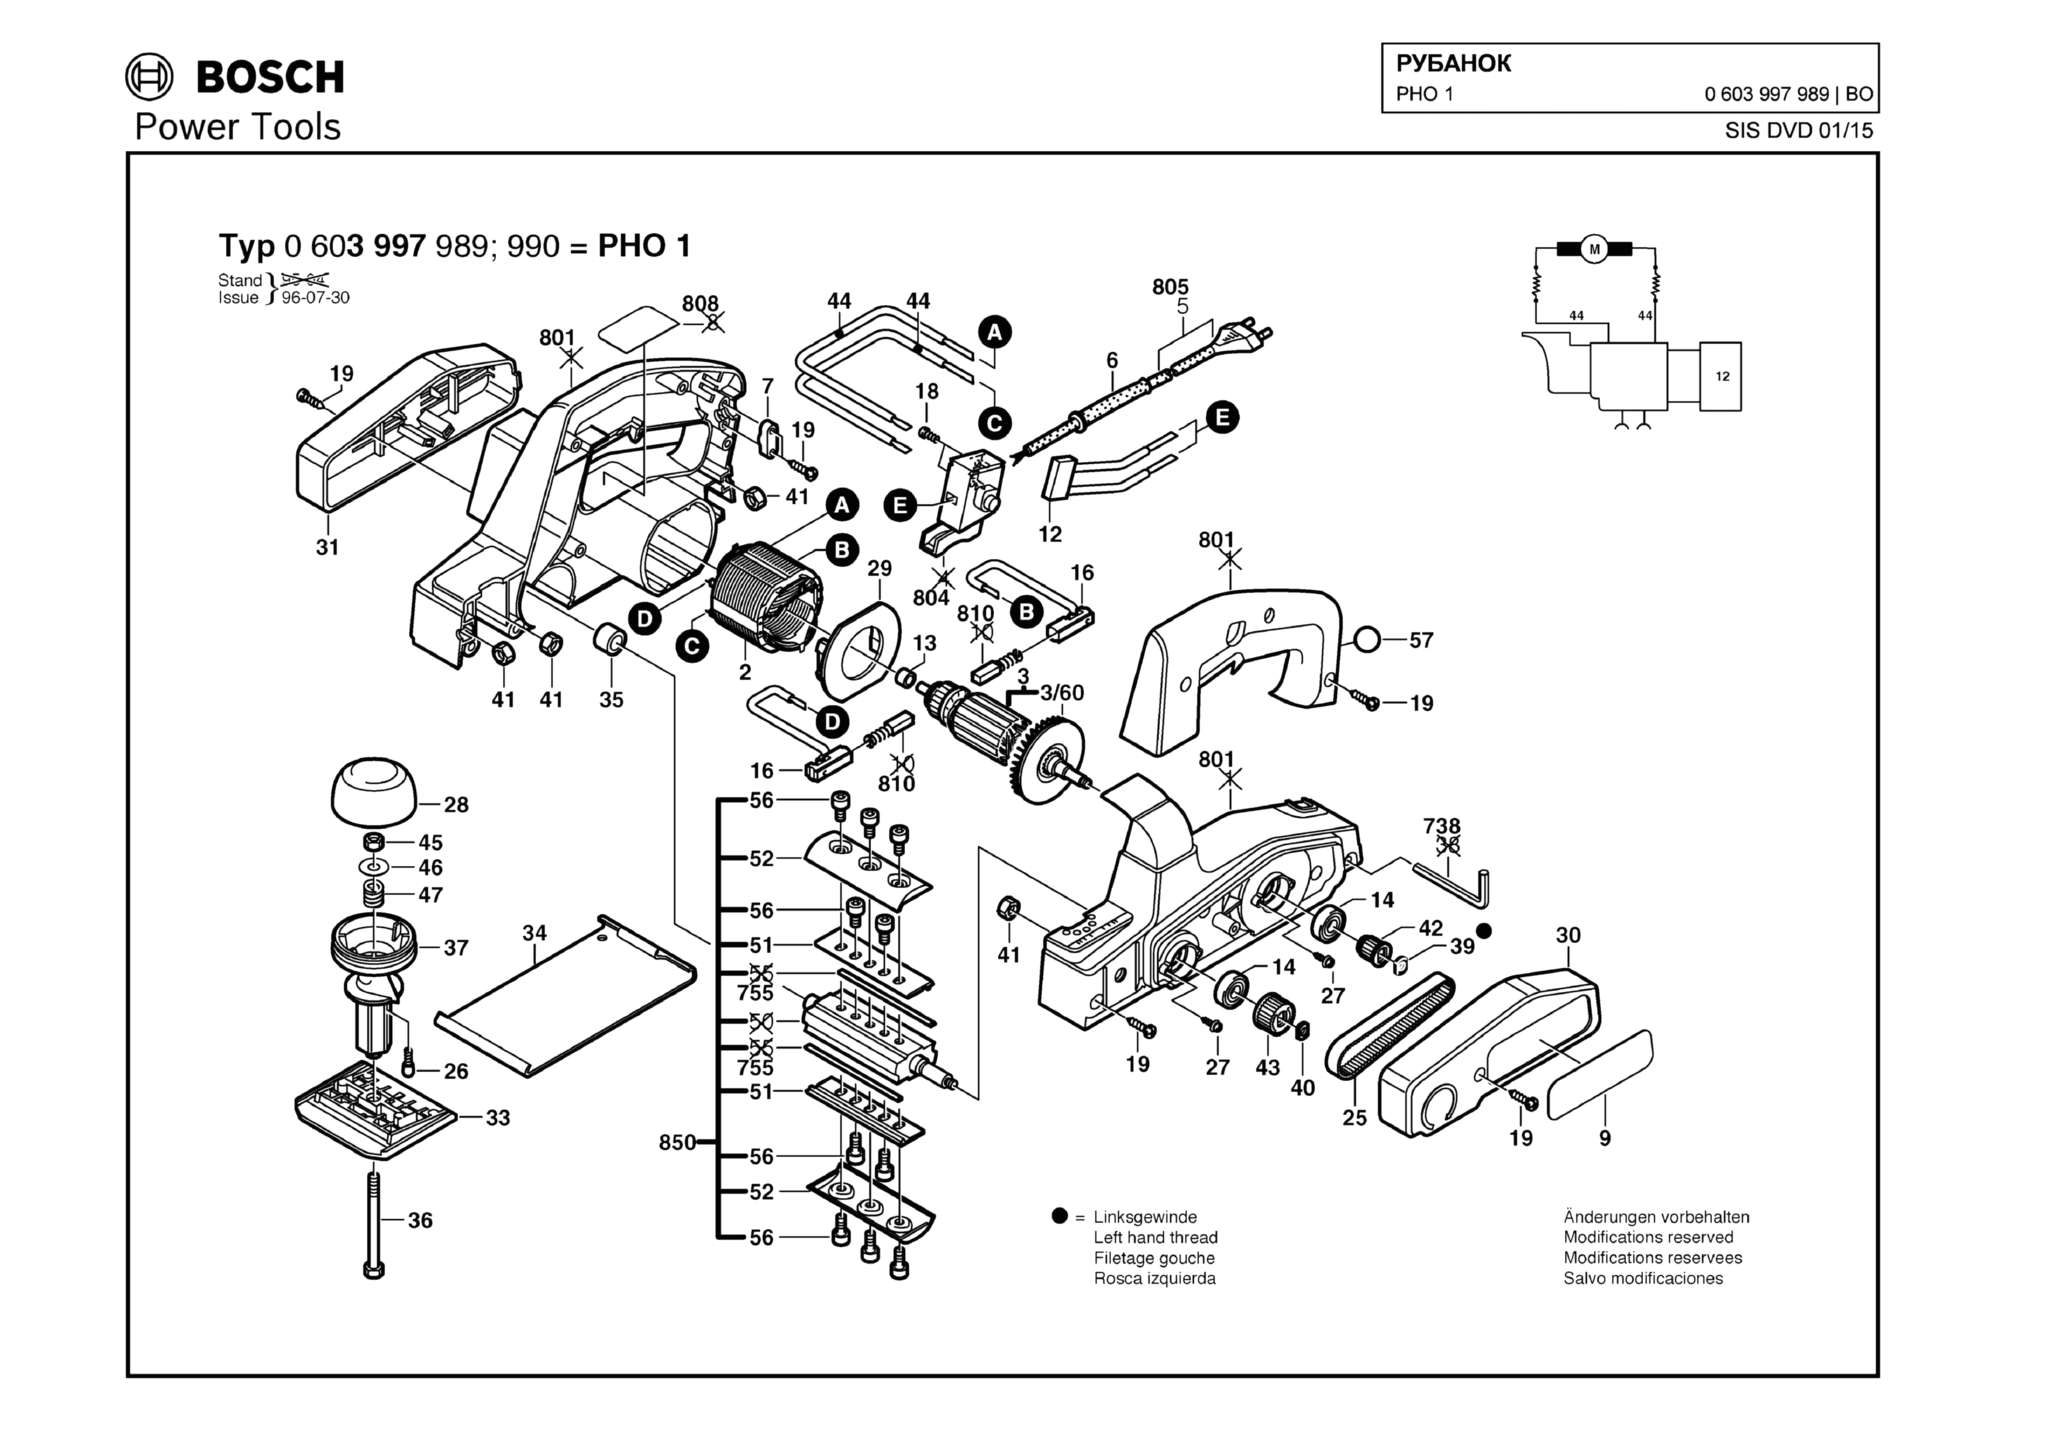 Запчасти, схема и деталировка Bosch PHO 1 (ТИП 0603997989)